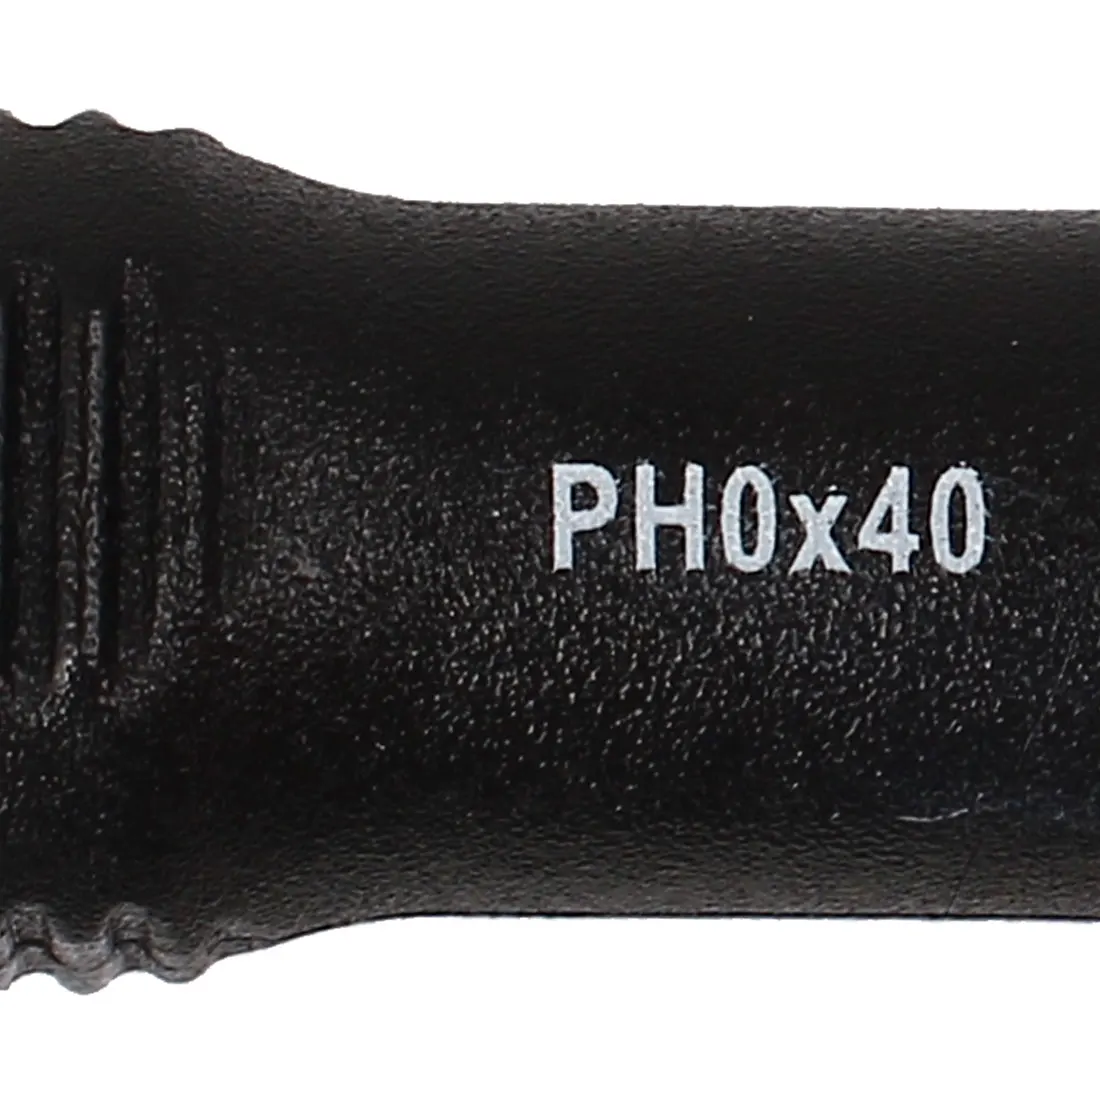 Uxcell Booher Авторизованная PH0 головка 3x40 мм перекрещивающаяся крестовина Phillips Прецизионная отвертка 135 мм/5,3 дюйма Длина